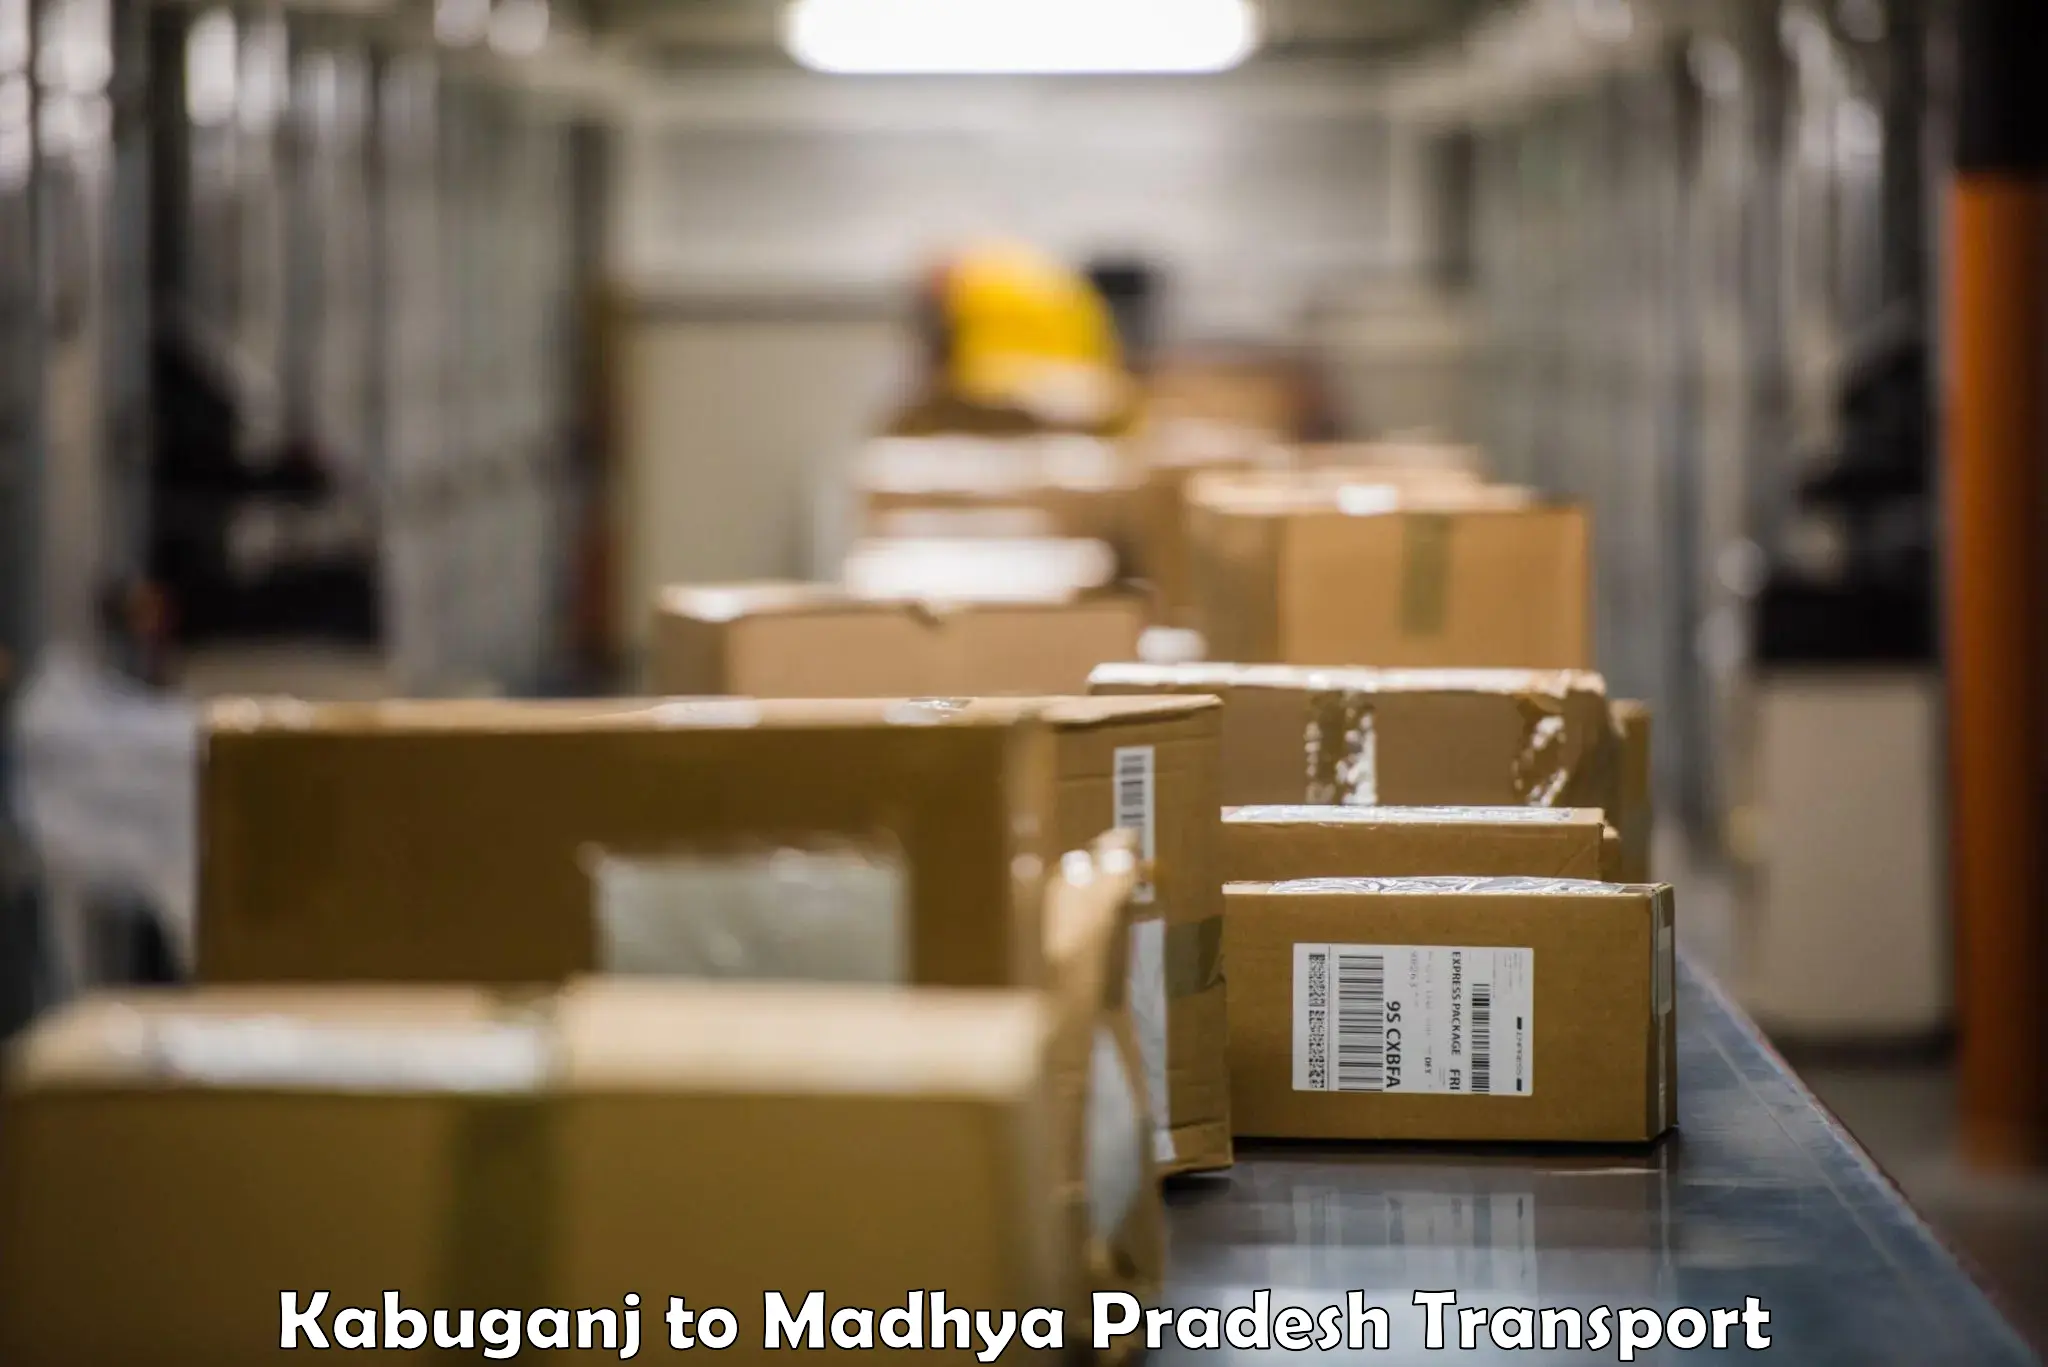 Road transport online services Kabuganj to Maheshwar